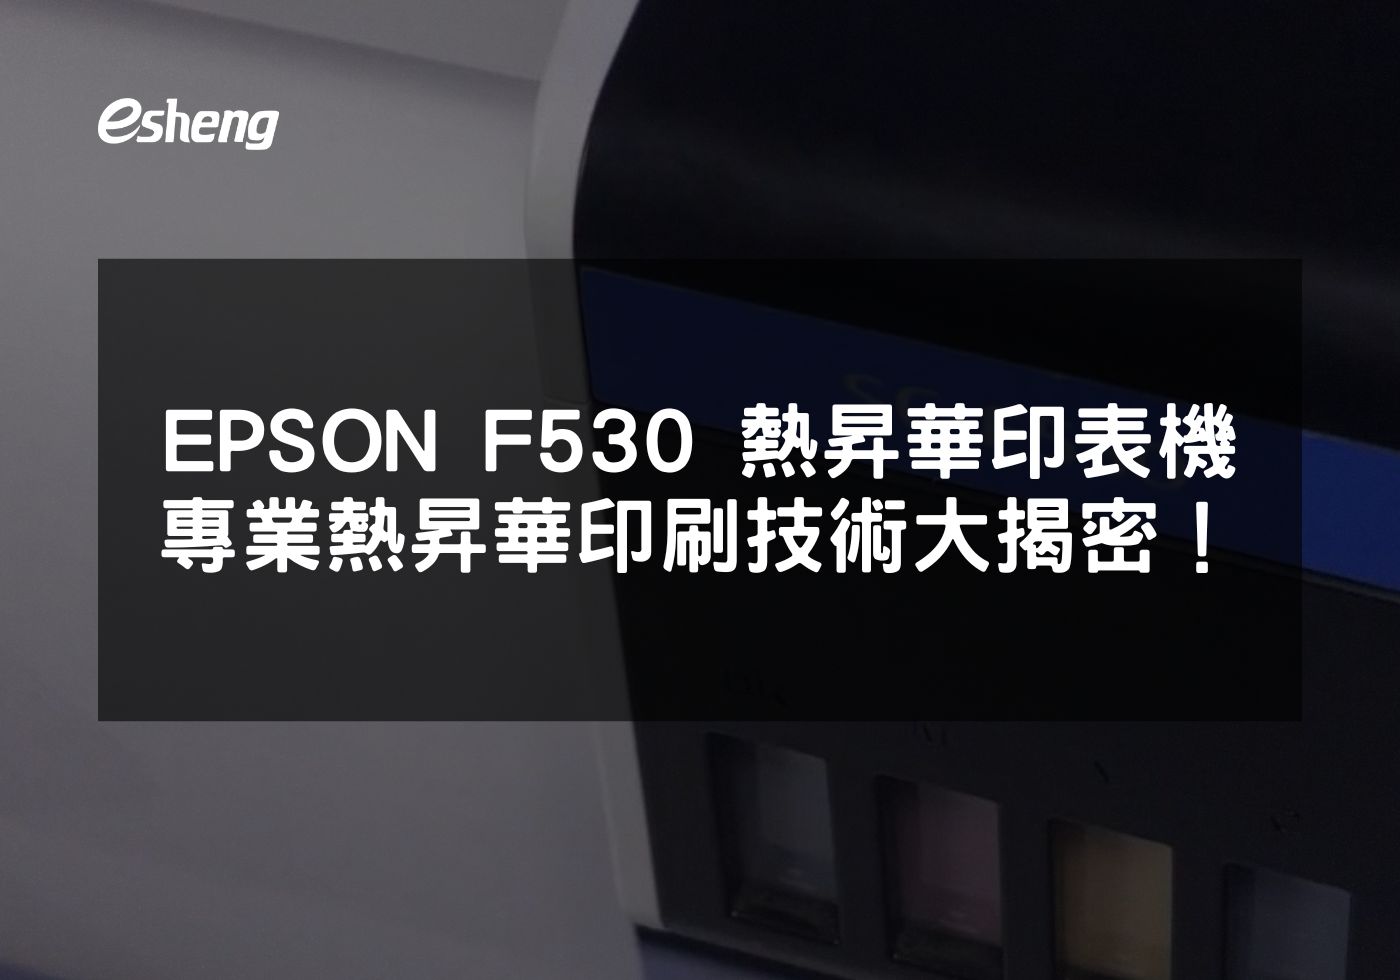 深入了解EPSON F530熱昇華印表機的專業特點和應用